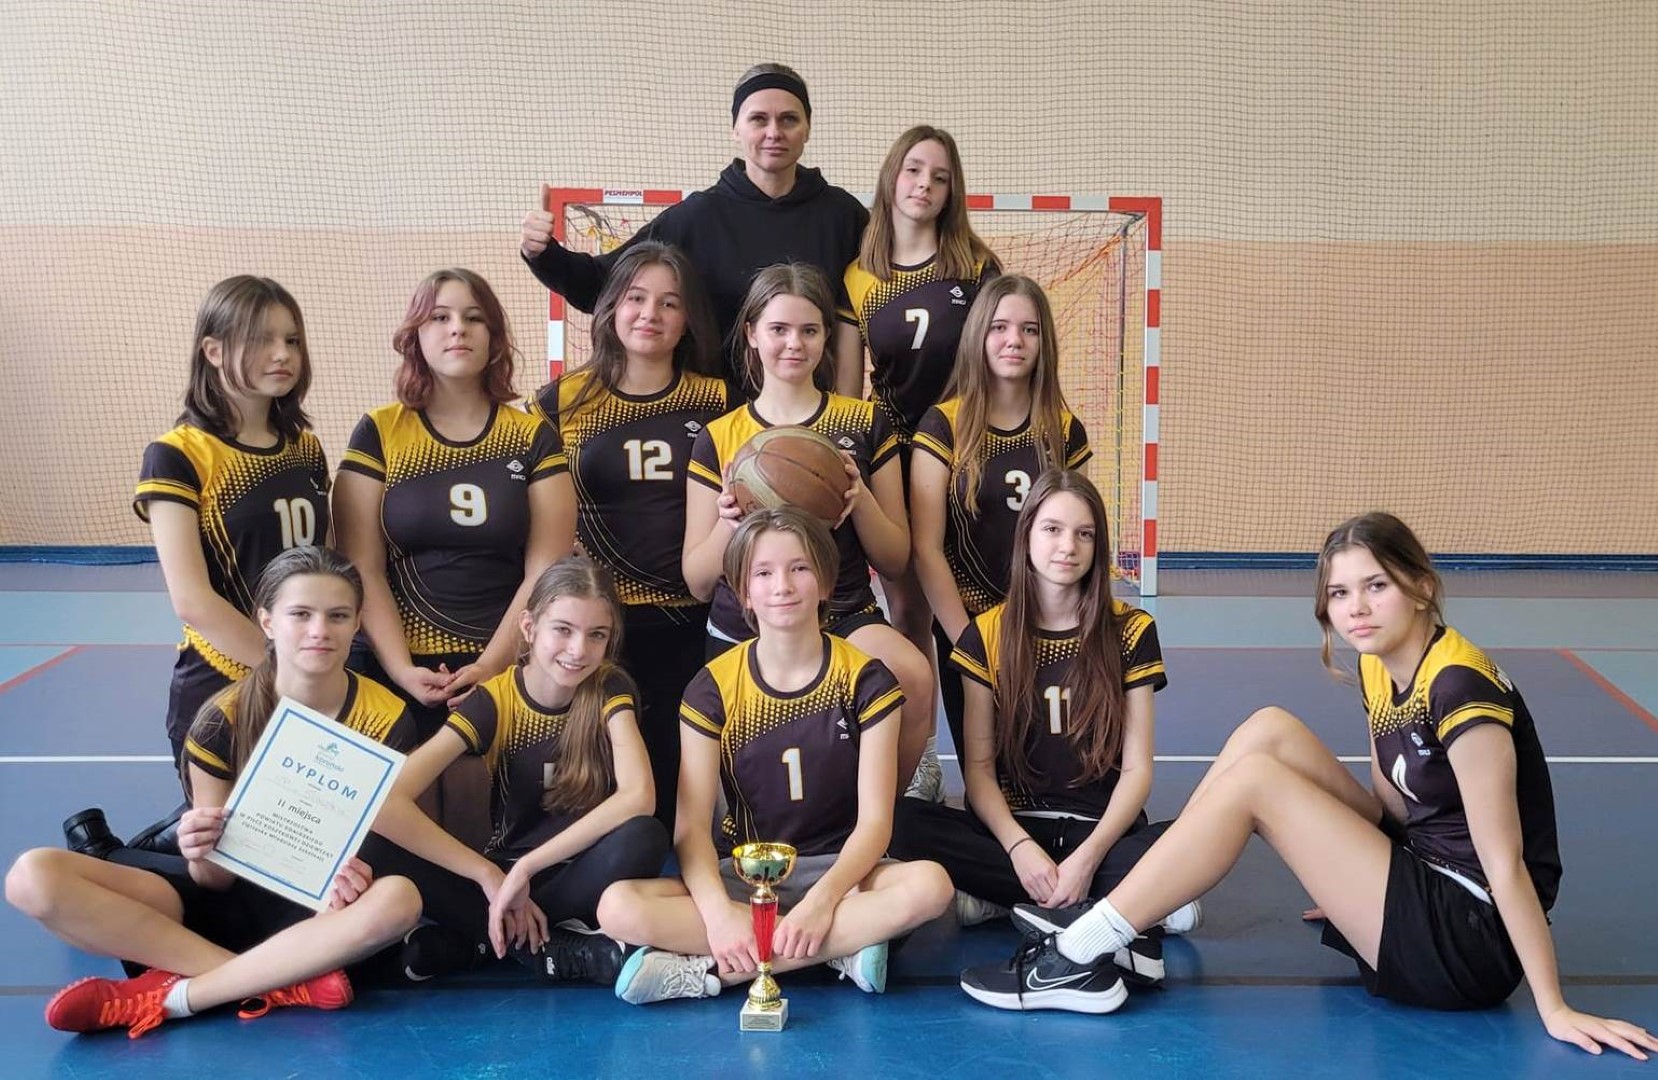 Szkolne sukcesy sportowe uczniów  ze Szkoły Podstawowej w Sławsku, w piłce koszykowej.